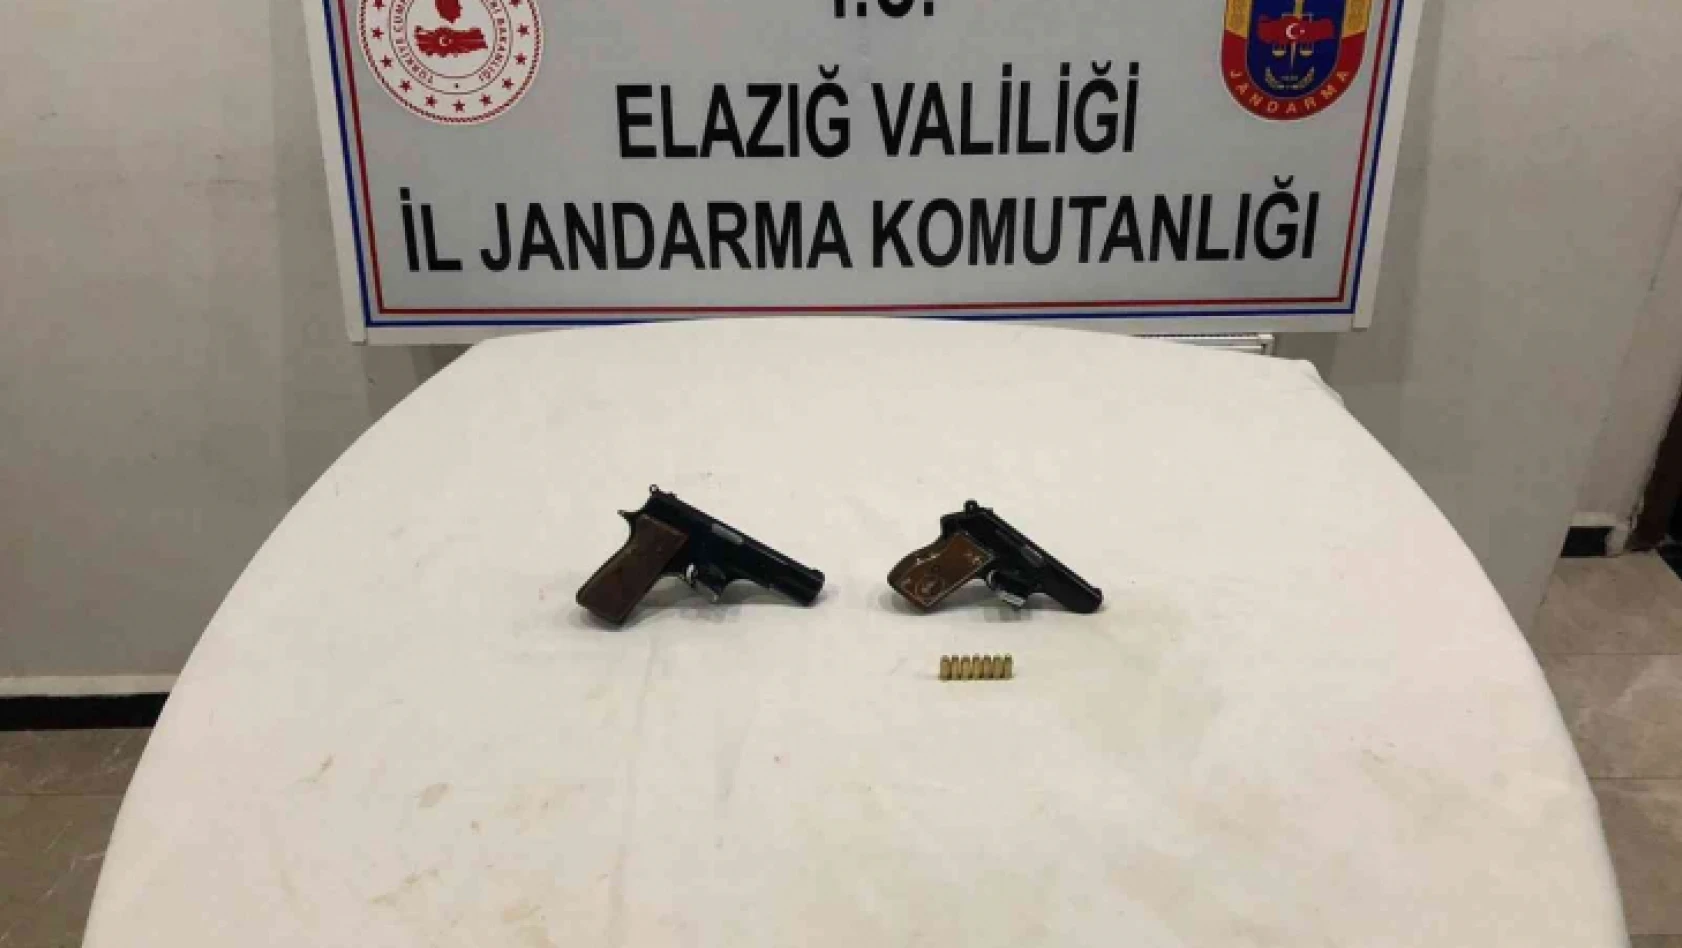 Elazığ'da  JASAT, 2 adet ruhsatsız tabanca ele geçirdi